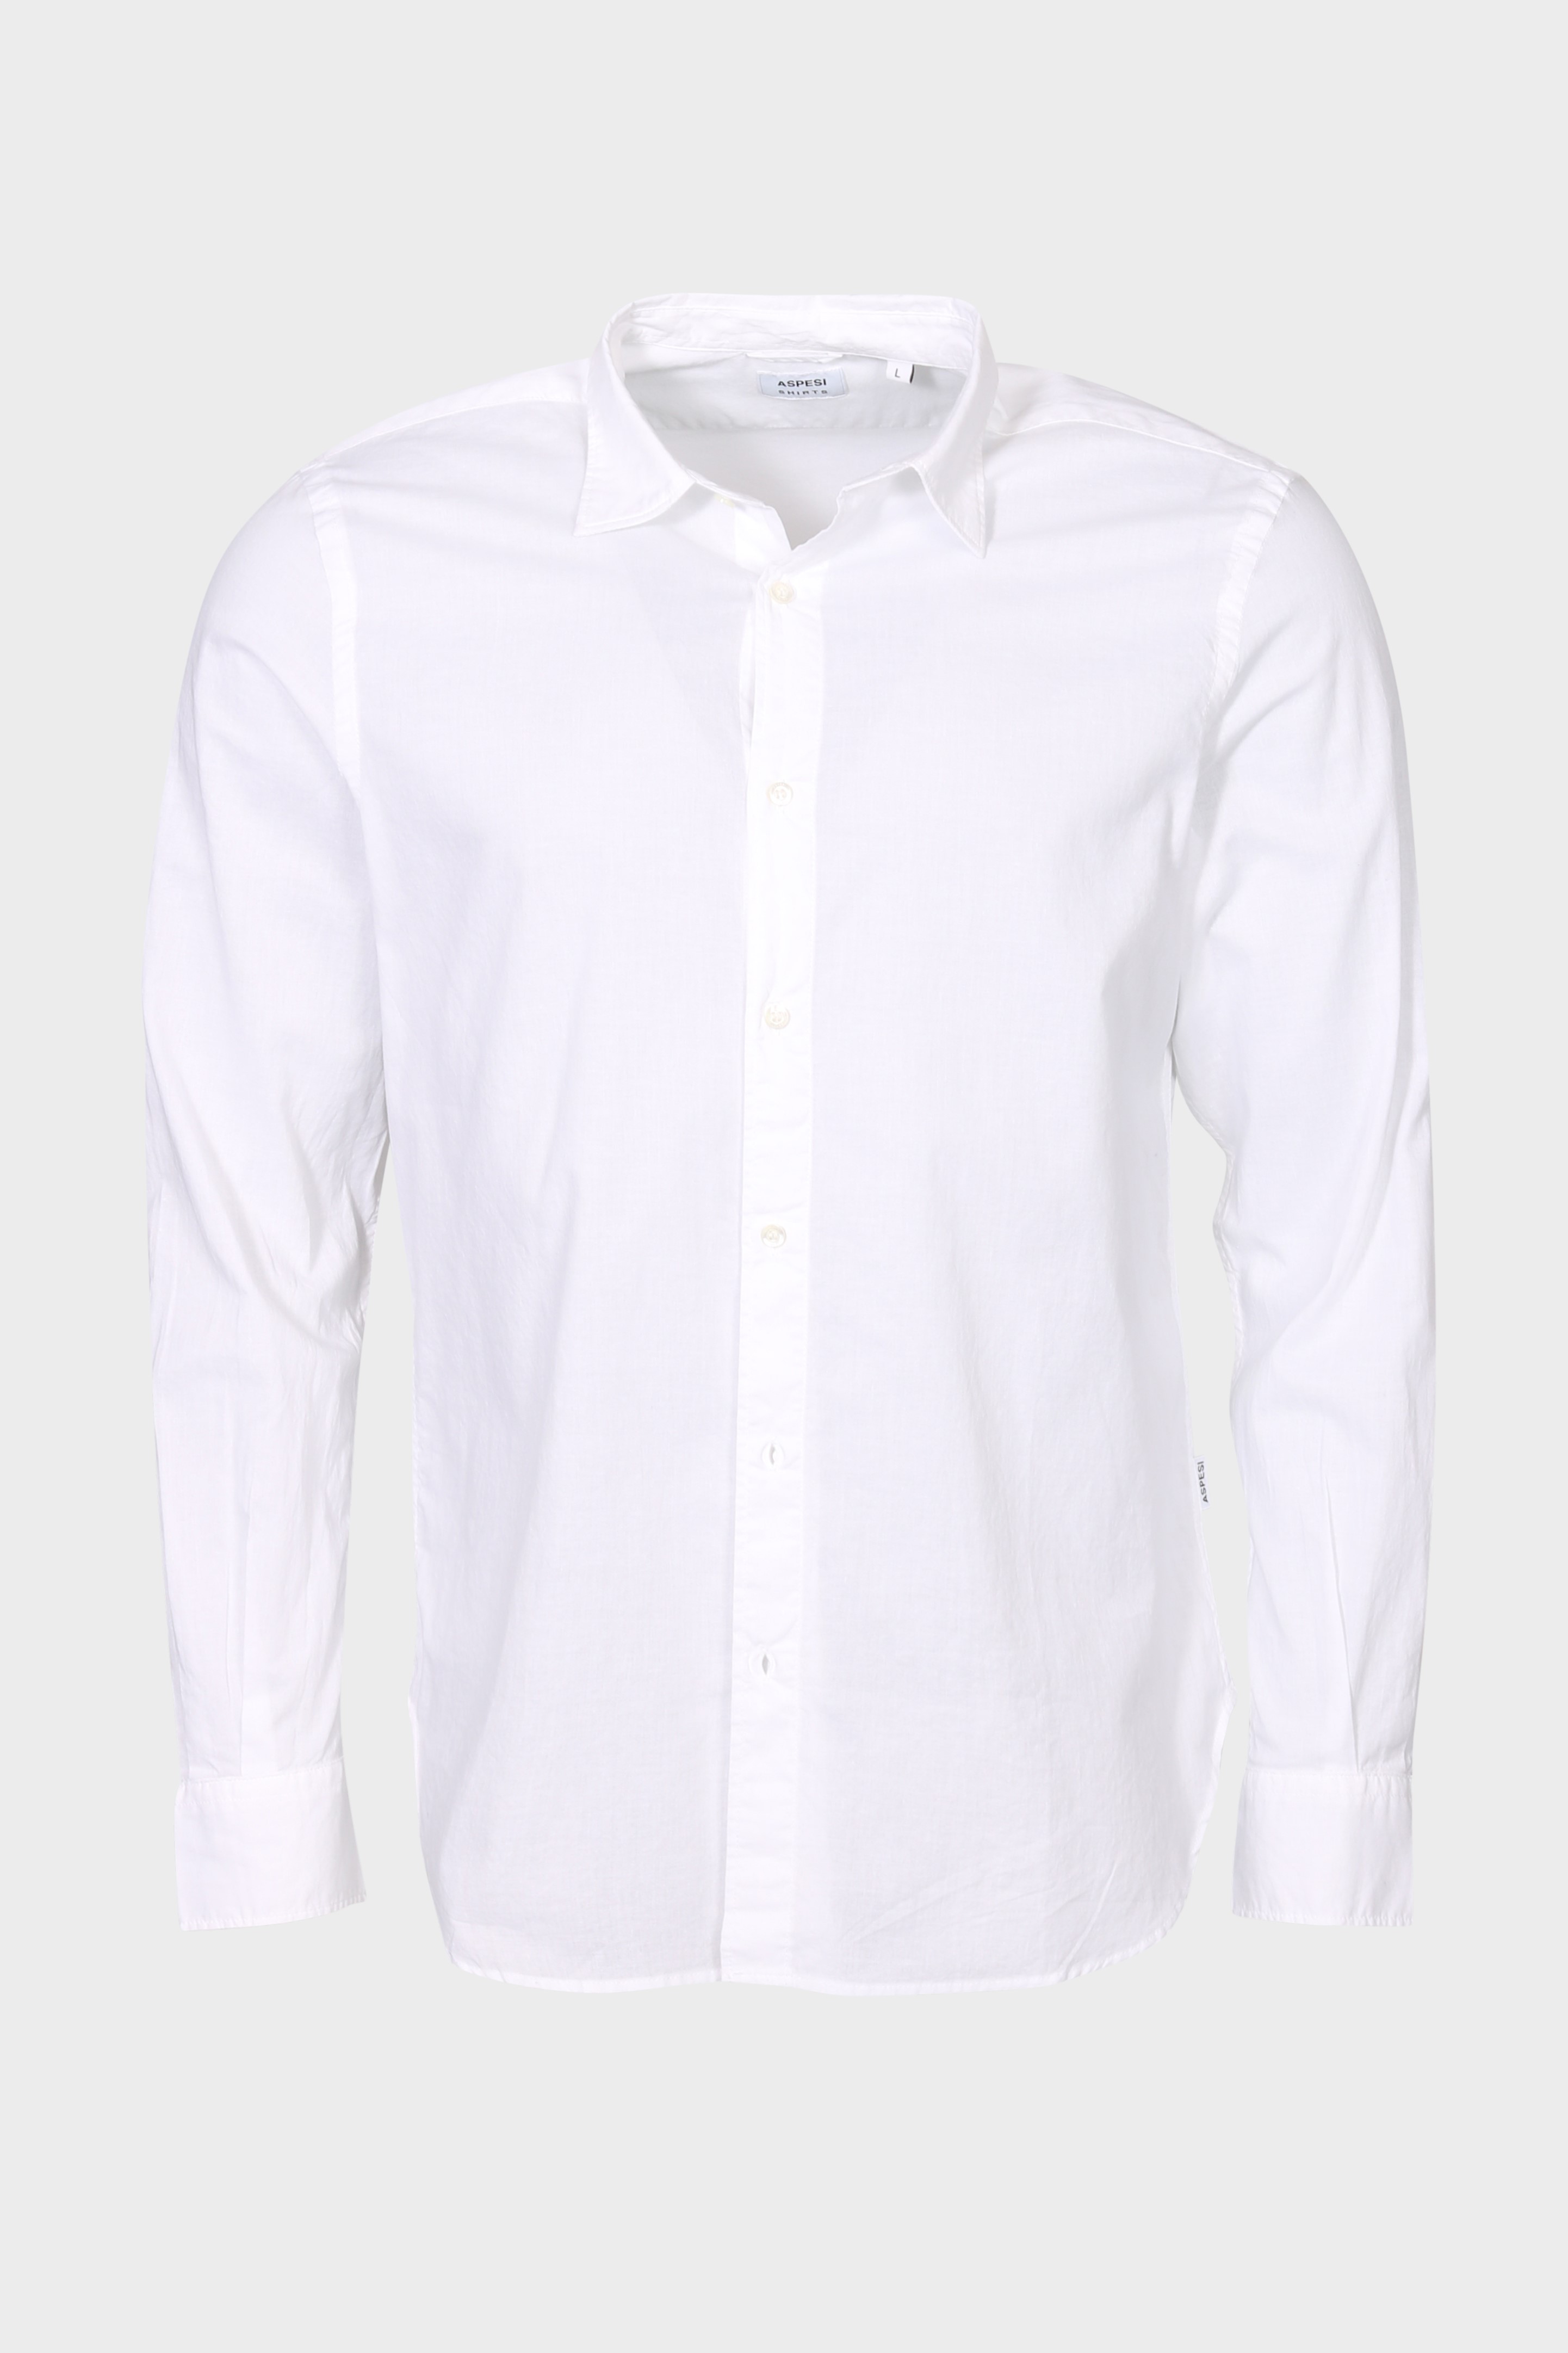 ASPESI Light Shirt in White